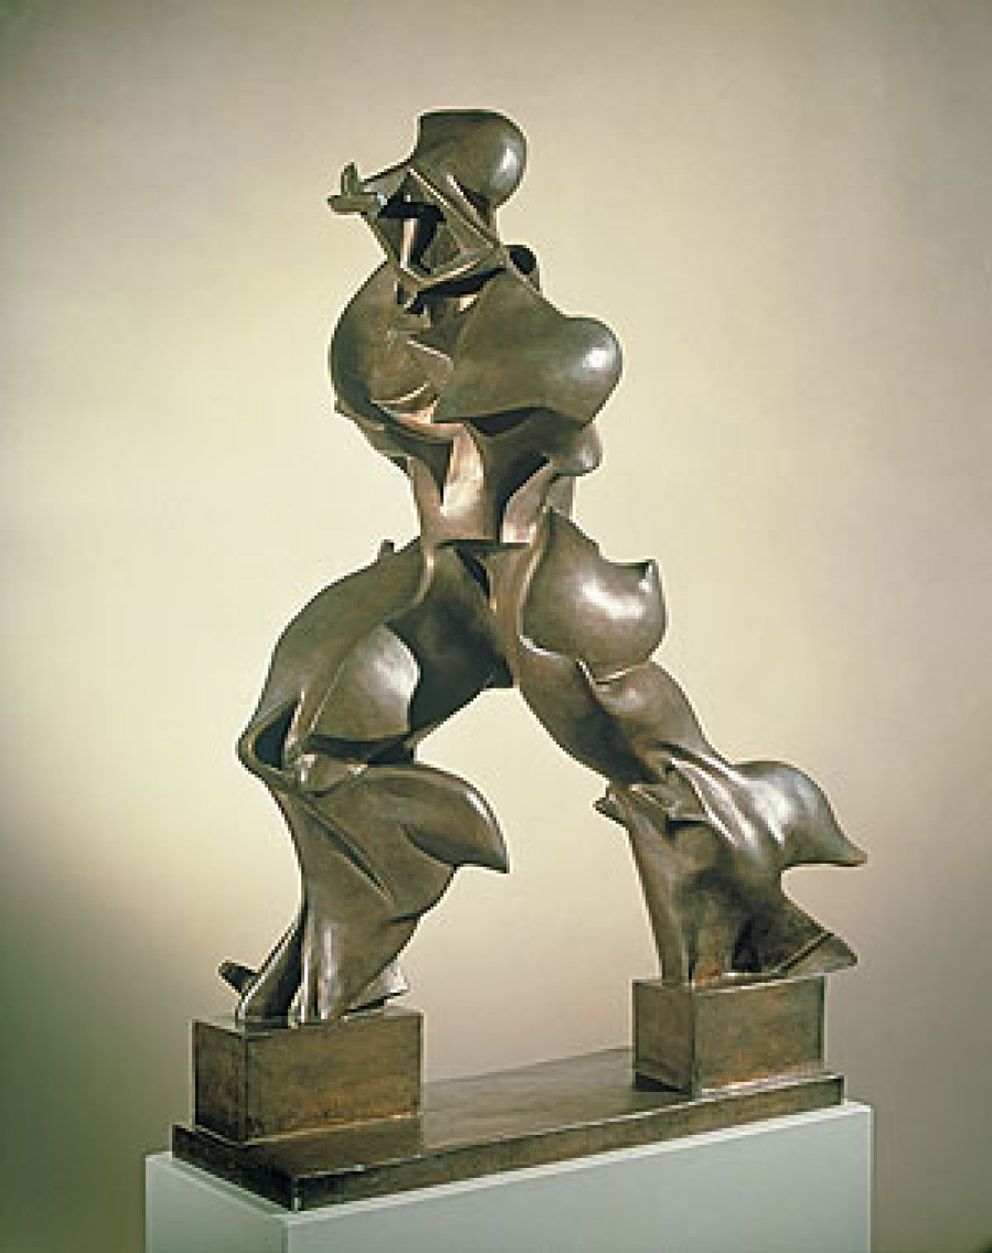 Arte: Los dibujos y las esculturas del futurista Boccioni se ...